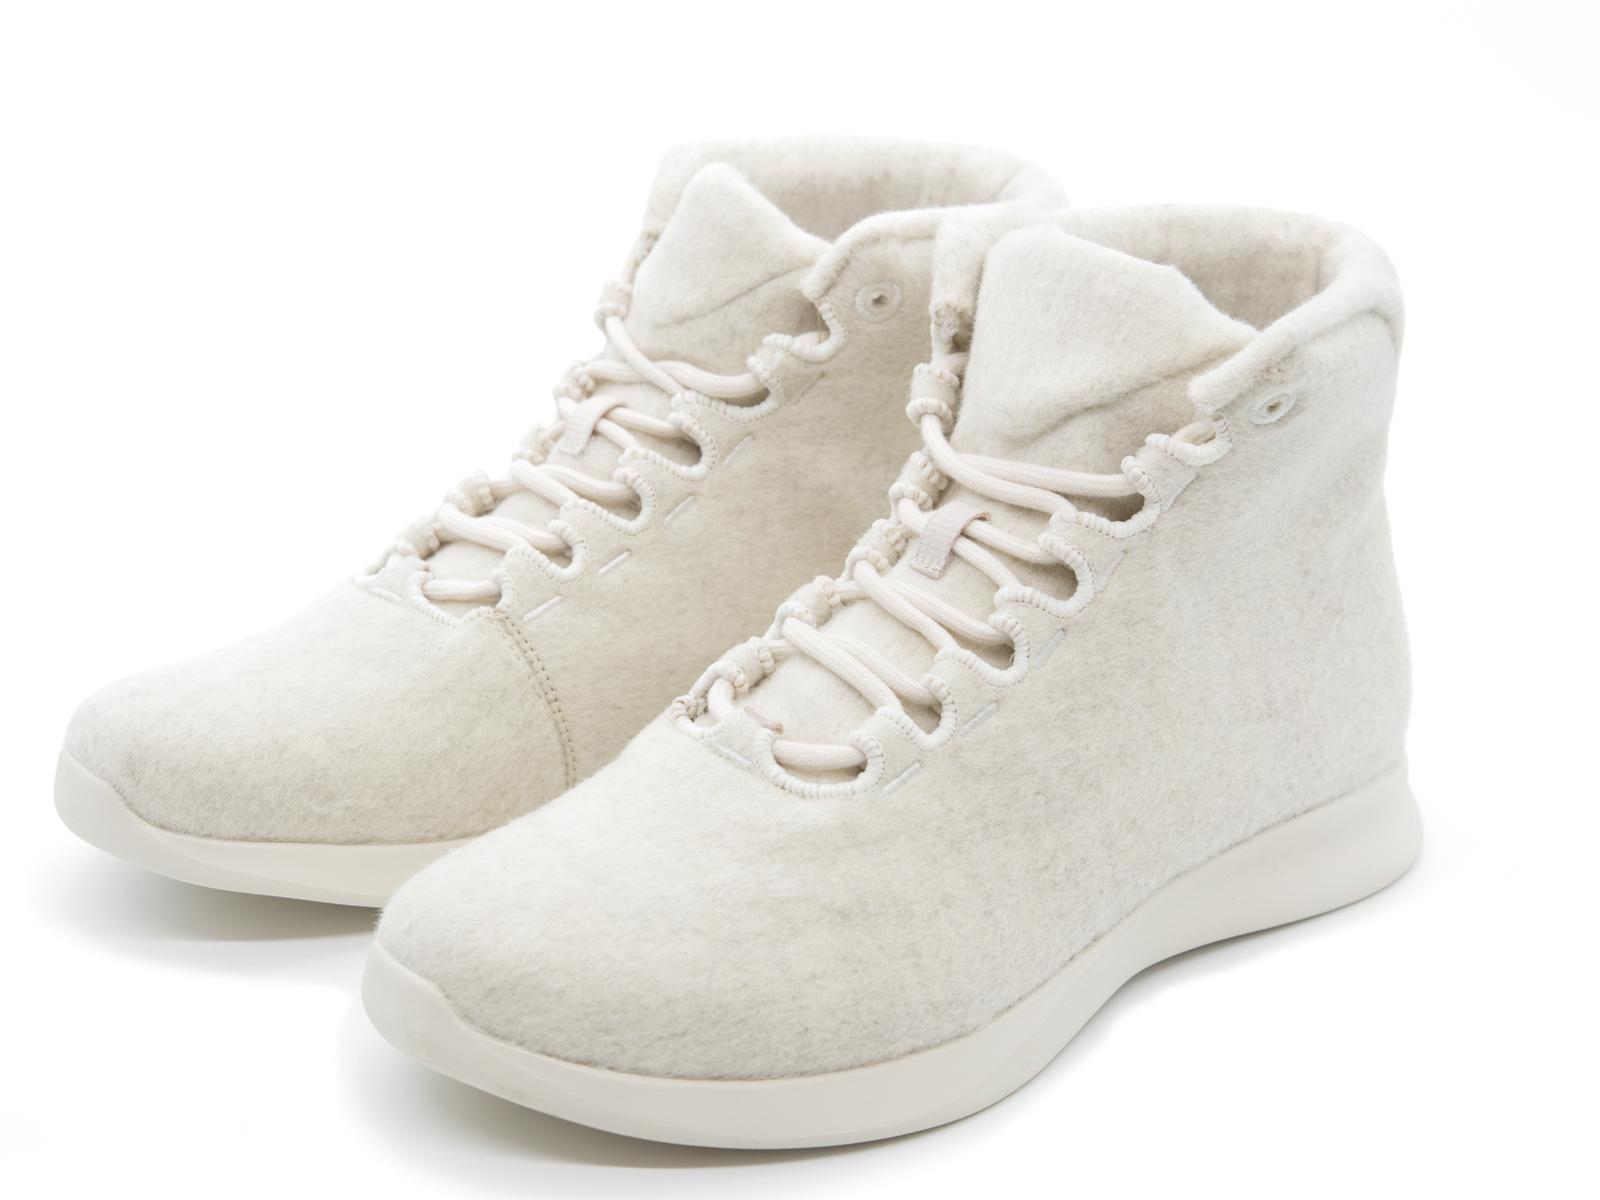  Merino Wool Sneakers - High Top